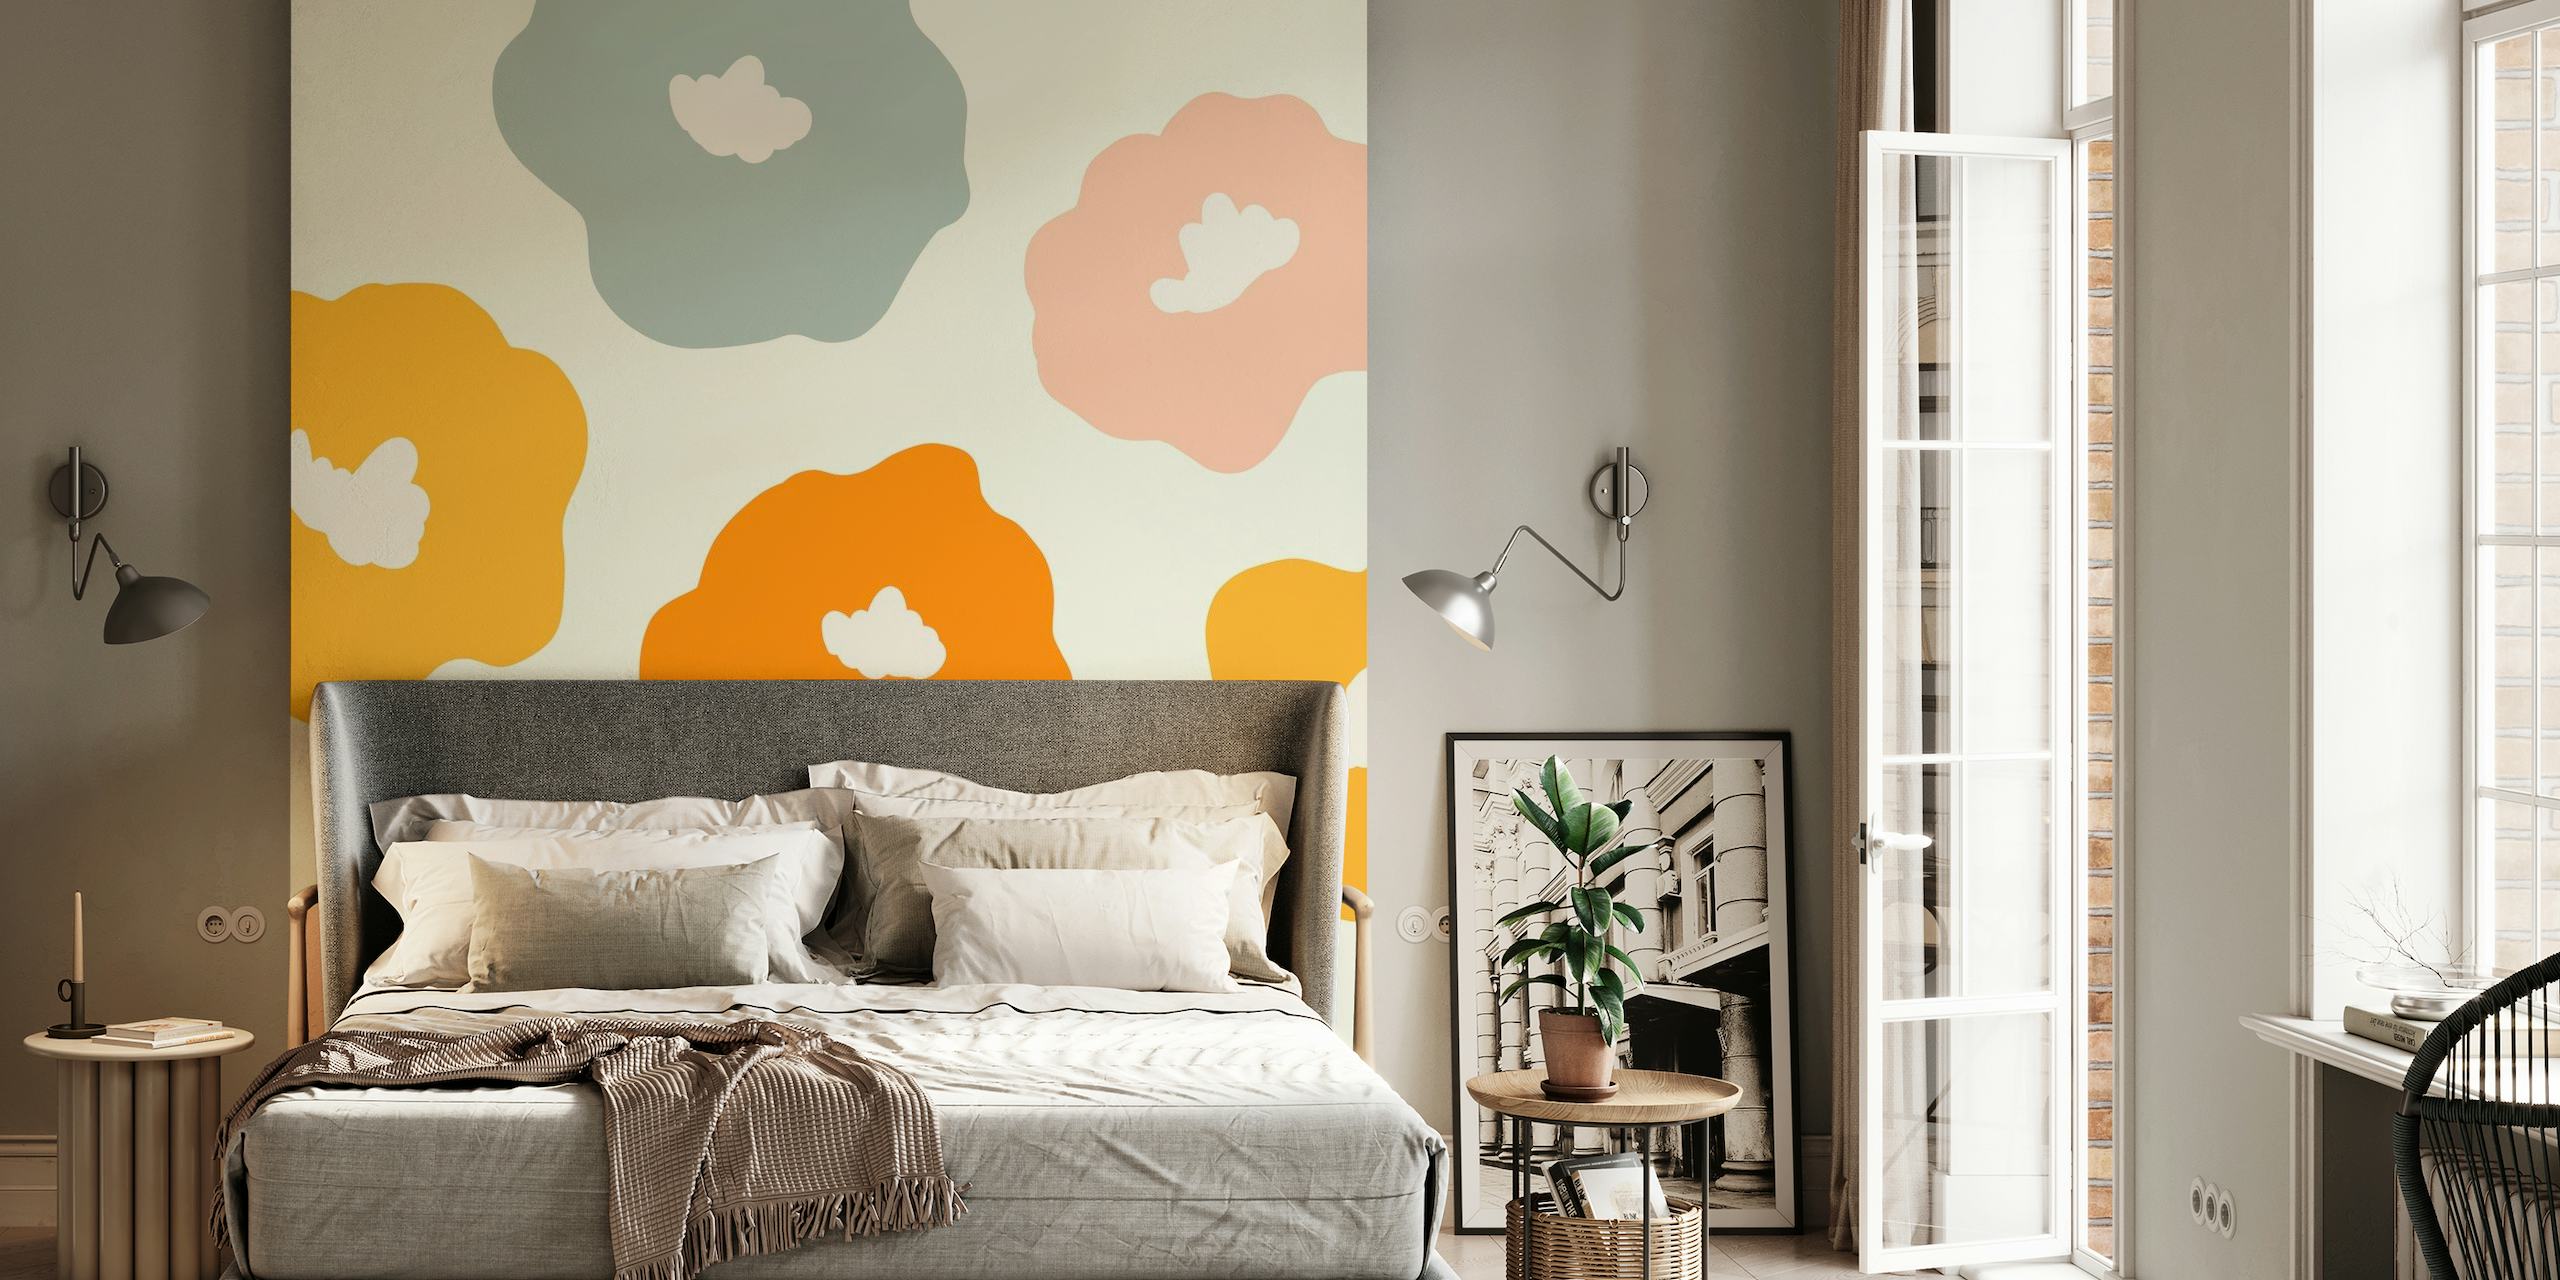 Kleurrijk retro-stijl bloemmotief op een muurschildering voor interieur